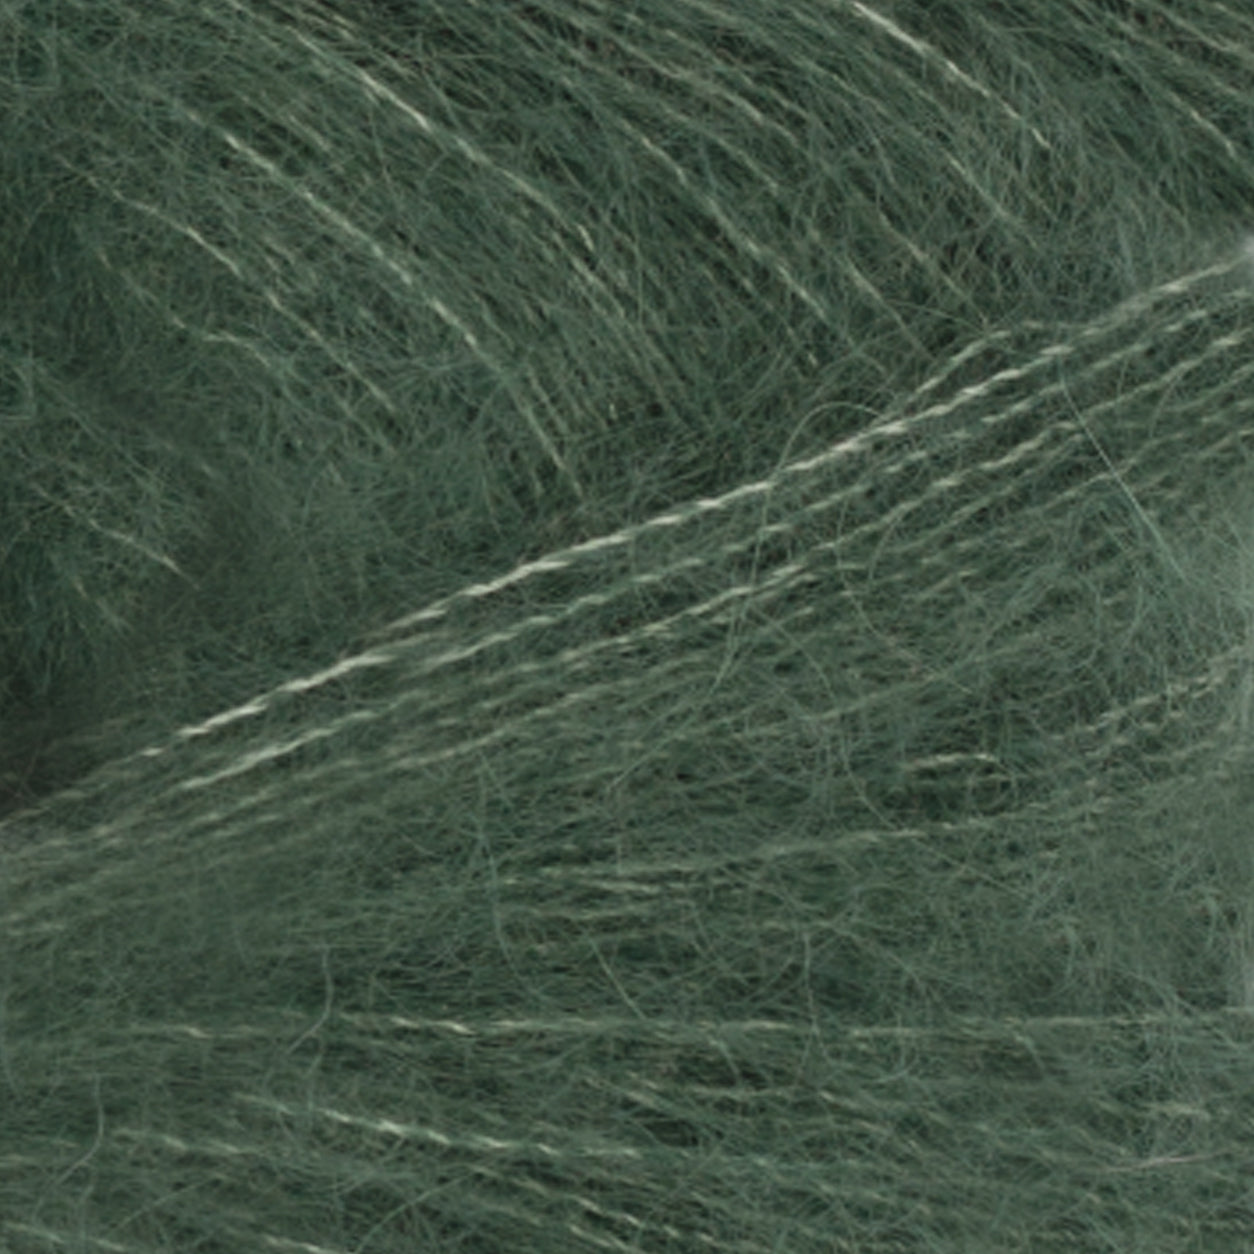 Tynn Silk Mohair dyb skovgrøn [8581]